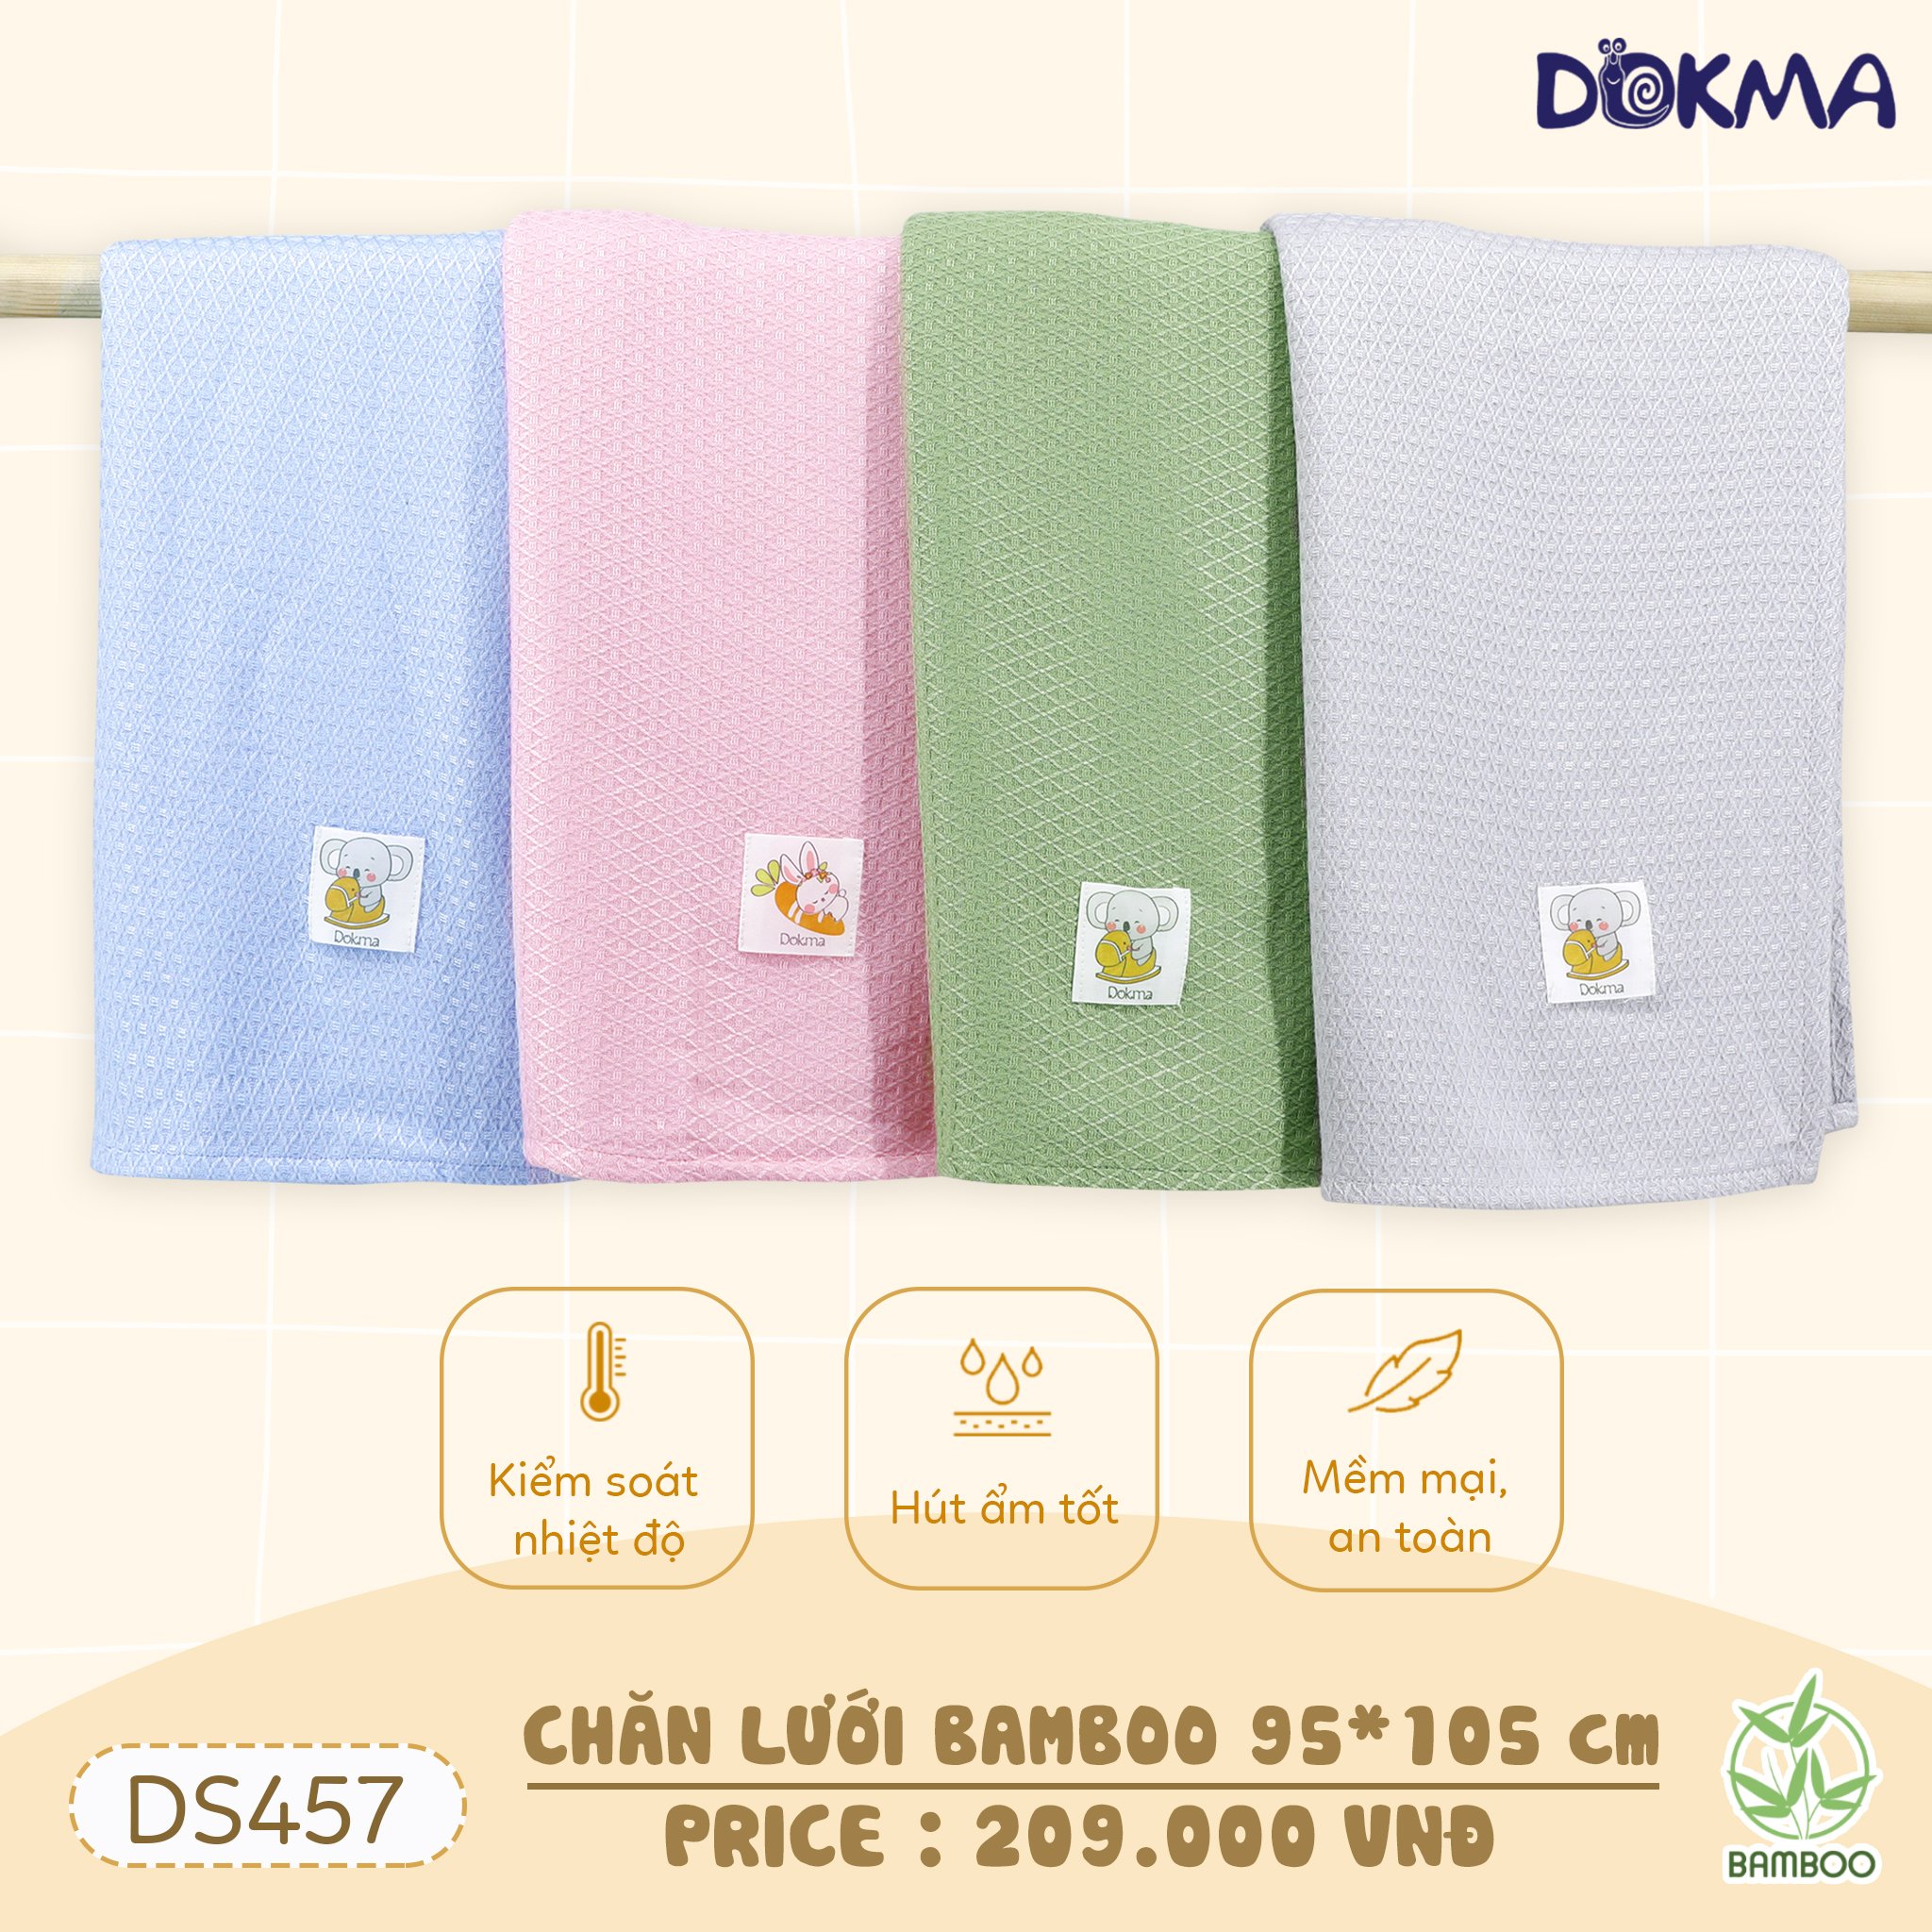 DS457 Chăn lưới bamboo DOKMA cao cấp cho bé từ sơ sinh KT 95x105cm